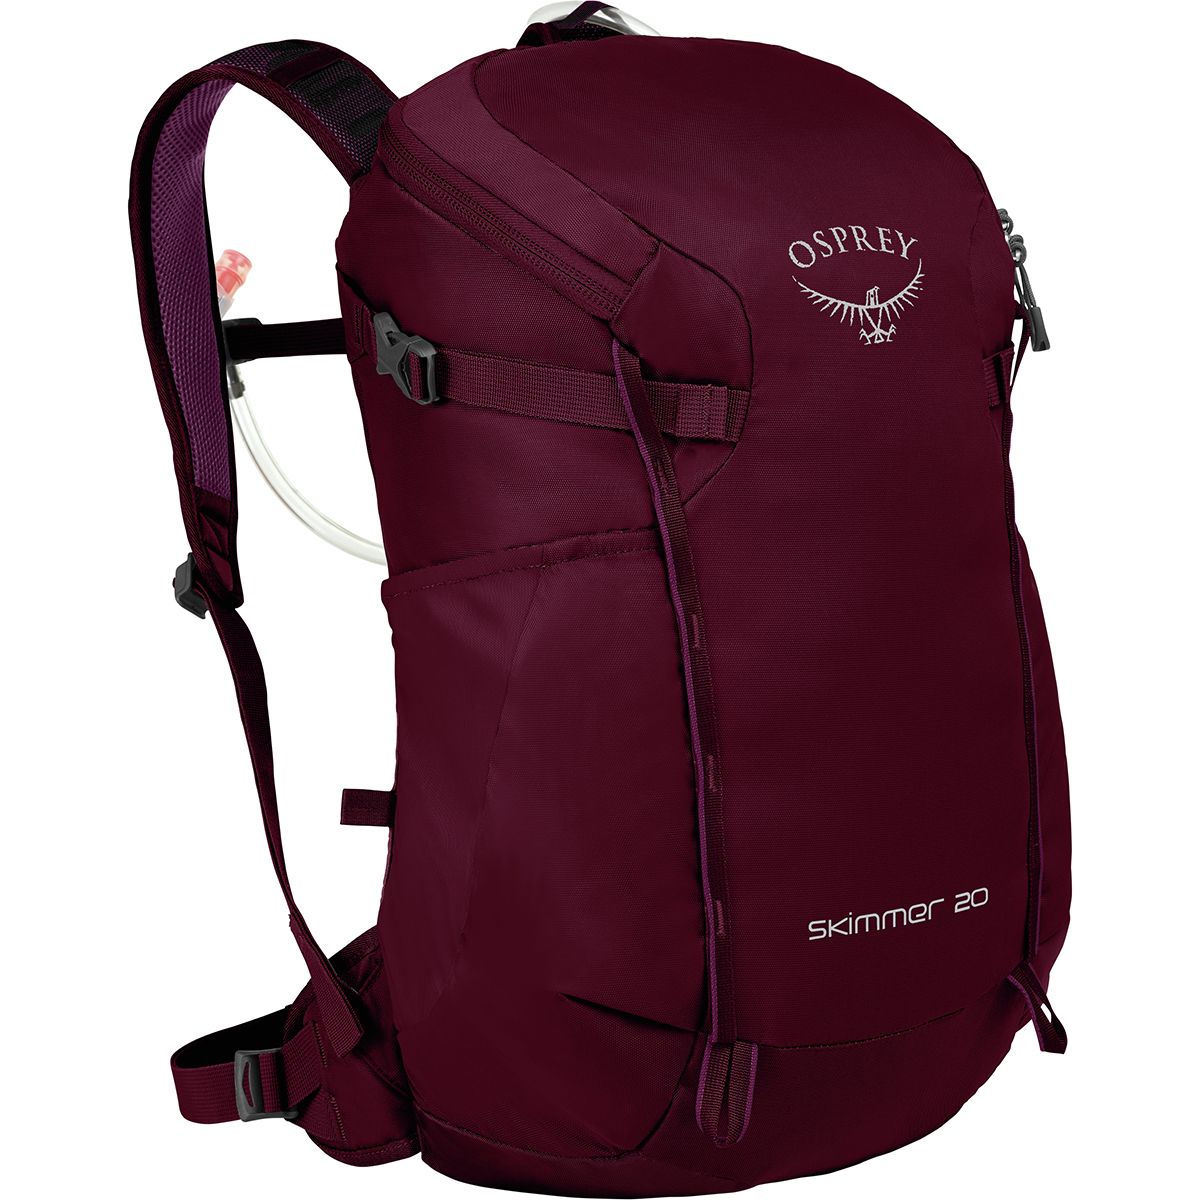 Osprey Packs Skimmer 20L Backpack - Women's